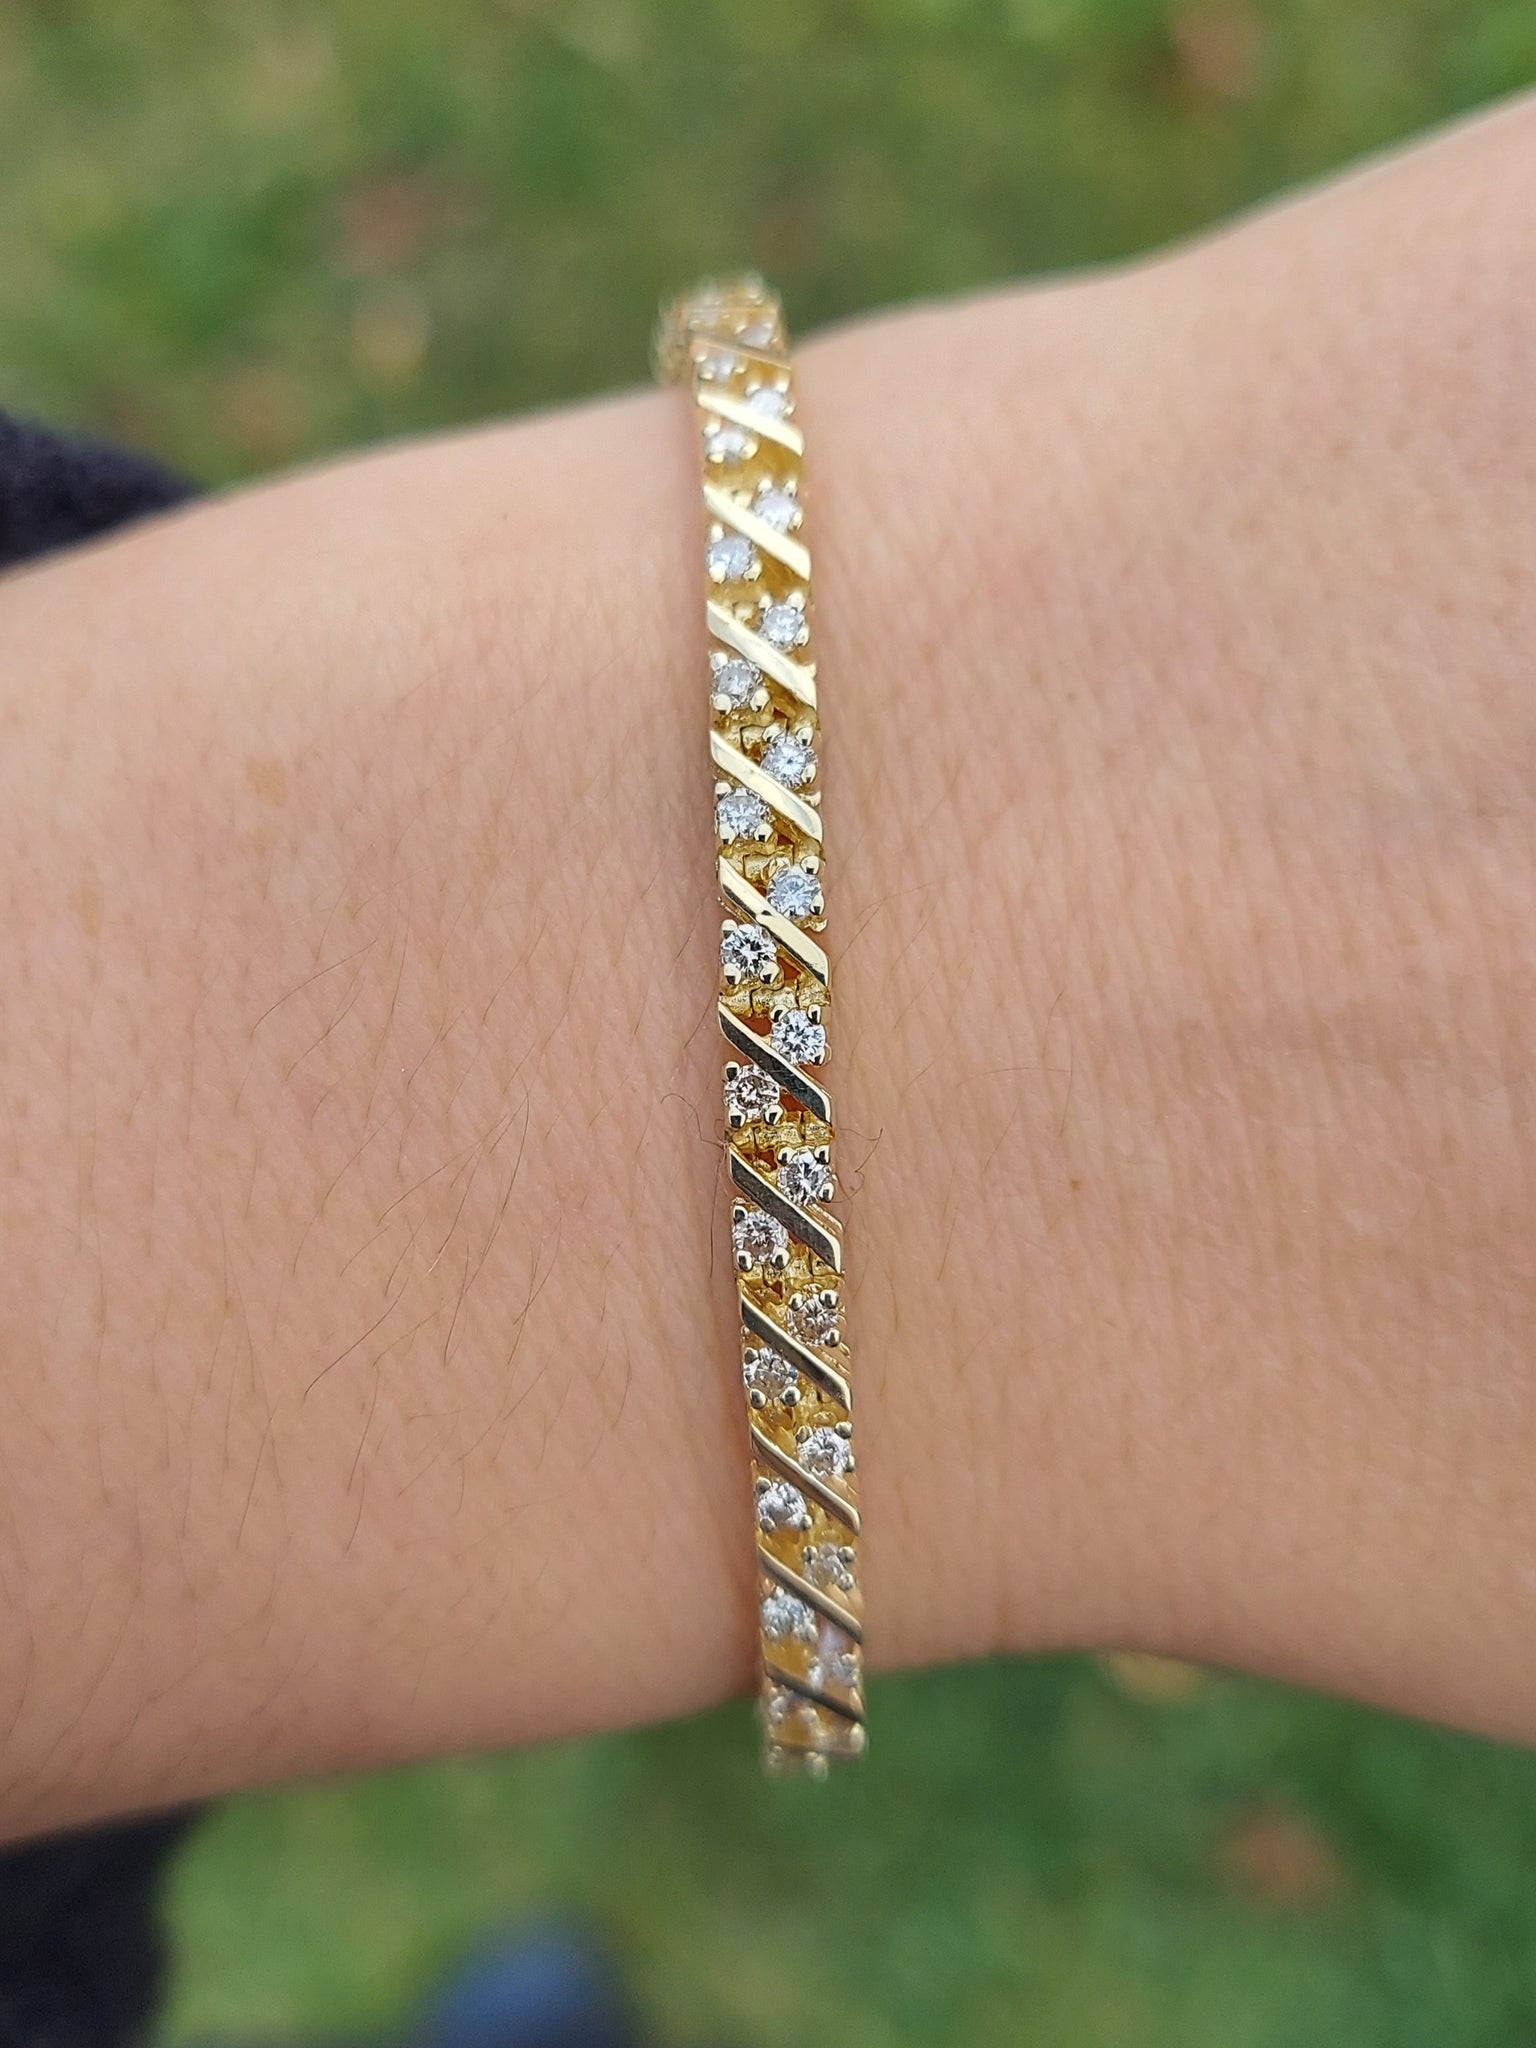 14K White Gold 7 Carat Diamond Alternating Rectangular Link Tennis Bracelet  | eBay